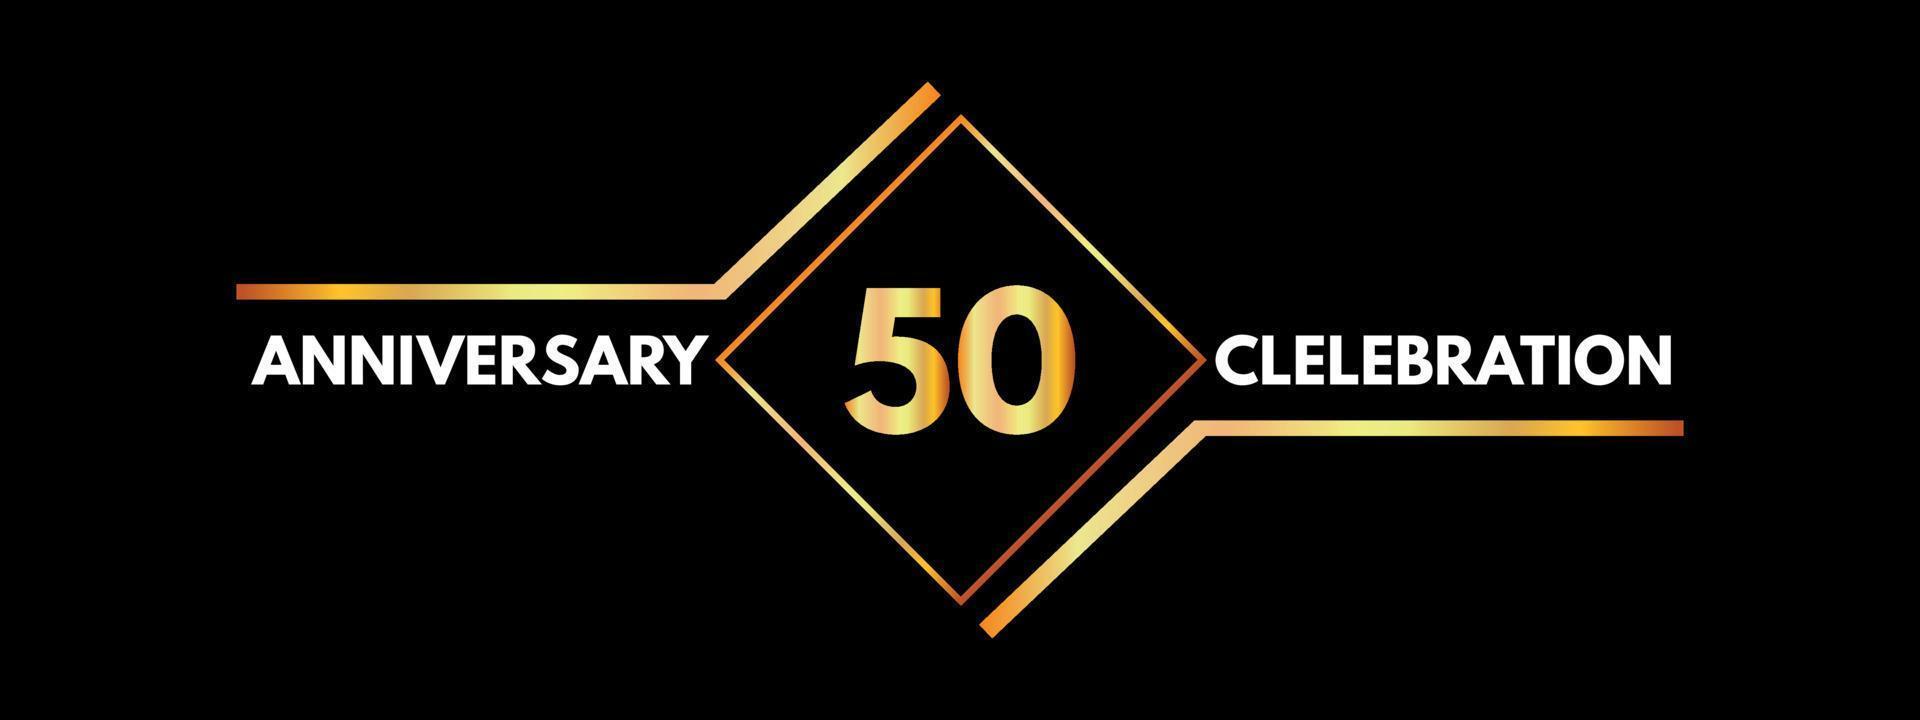 50 Jahre Jubiläumsfeier mit Goldrahmen isoliert auf schwarzem Hintergrund. vektordesign für grußkarte, geburtstagsfeier, hochzeit, eventparty, einladung, zeremonie. Logo zum 50-jährigen Jubiläum. vektor